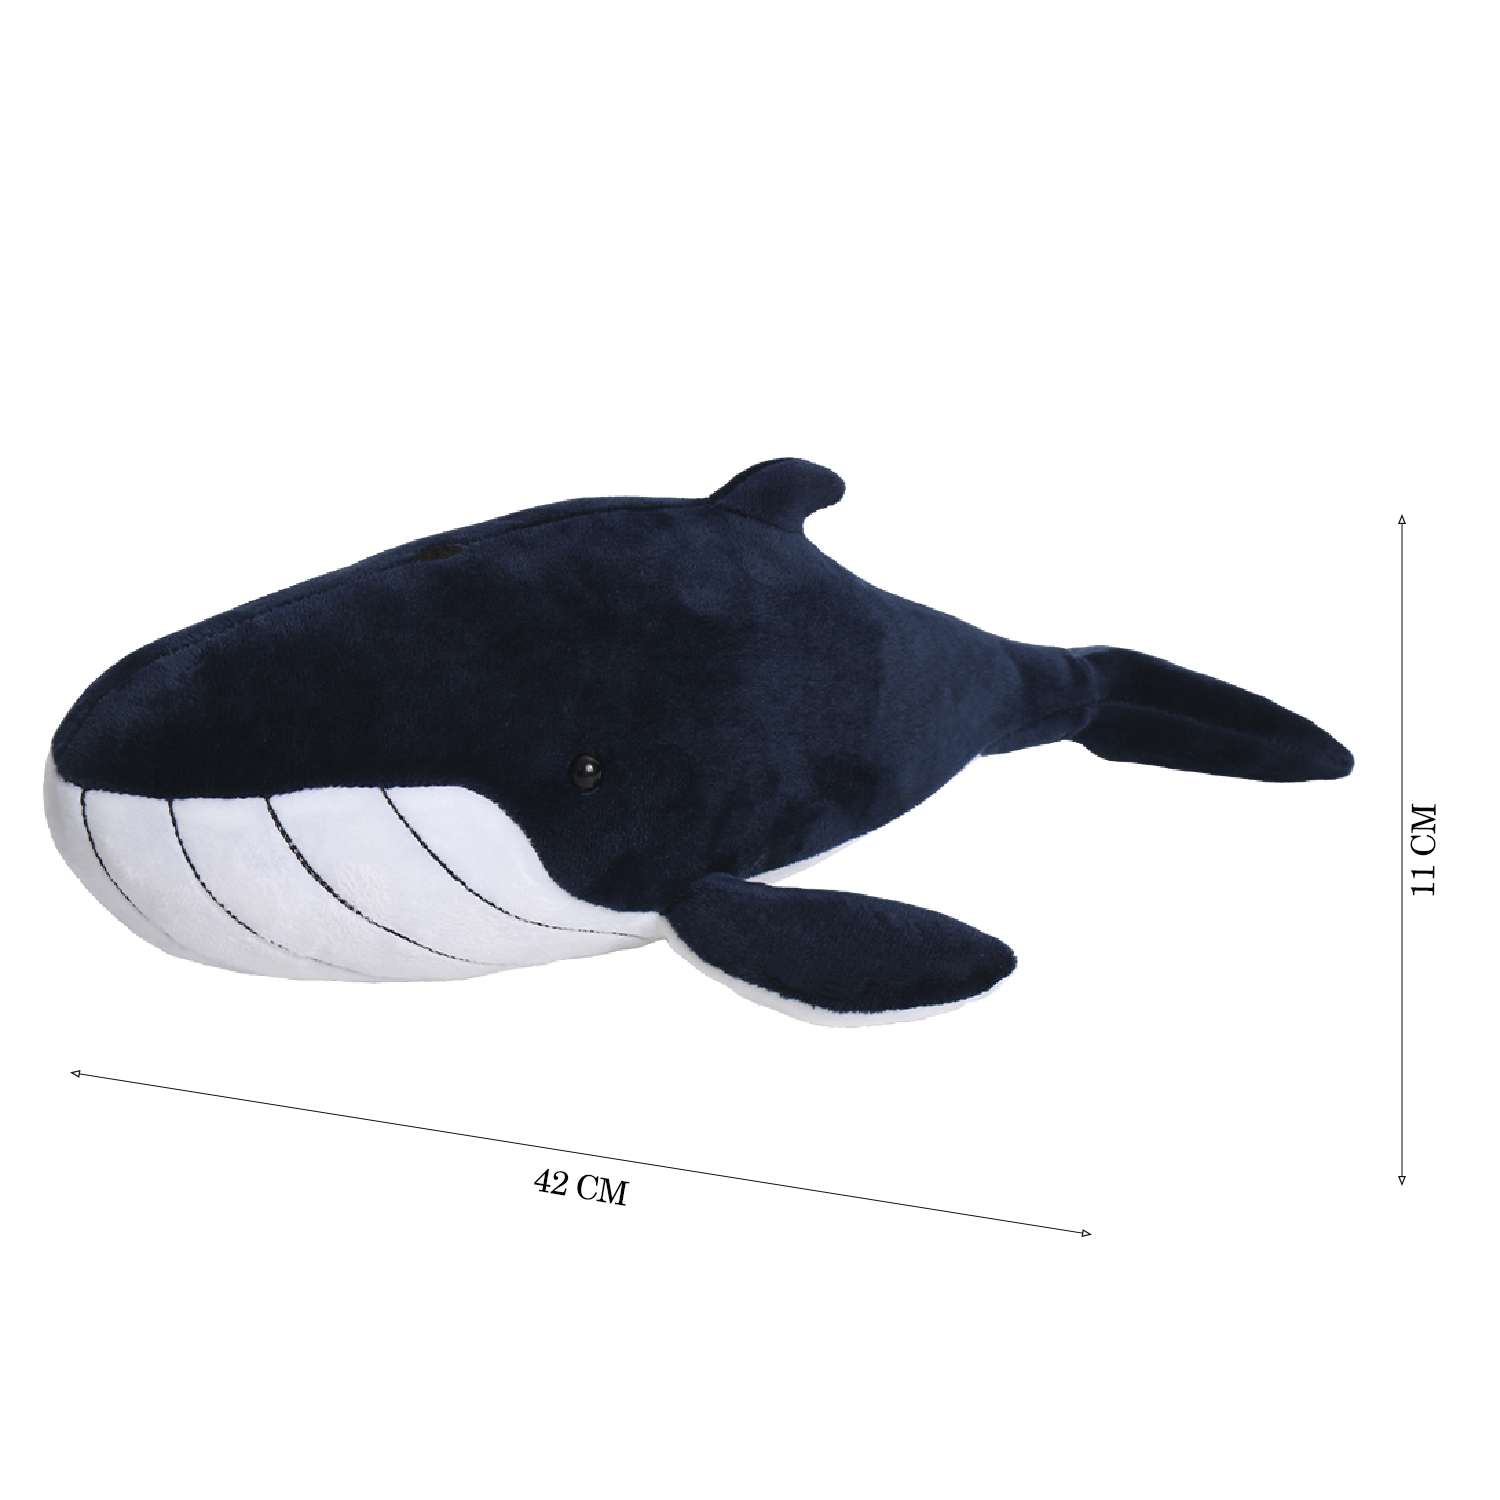 Мягкая игрушка All About Nature Голубой кит 42см серия Морские обитатели - фото 2